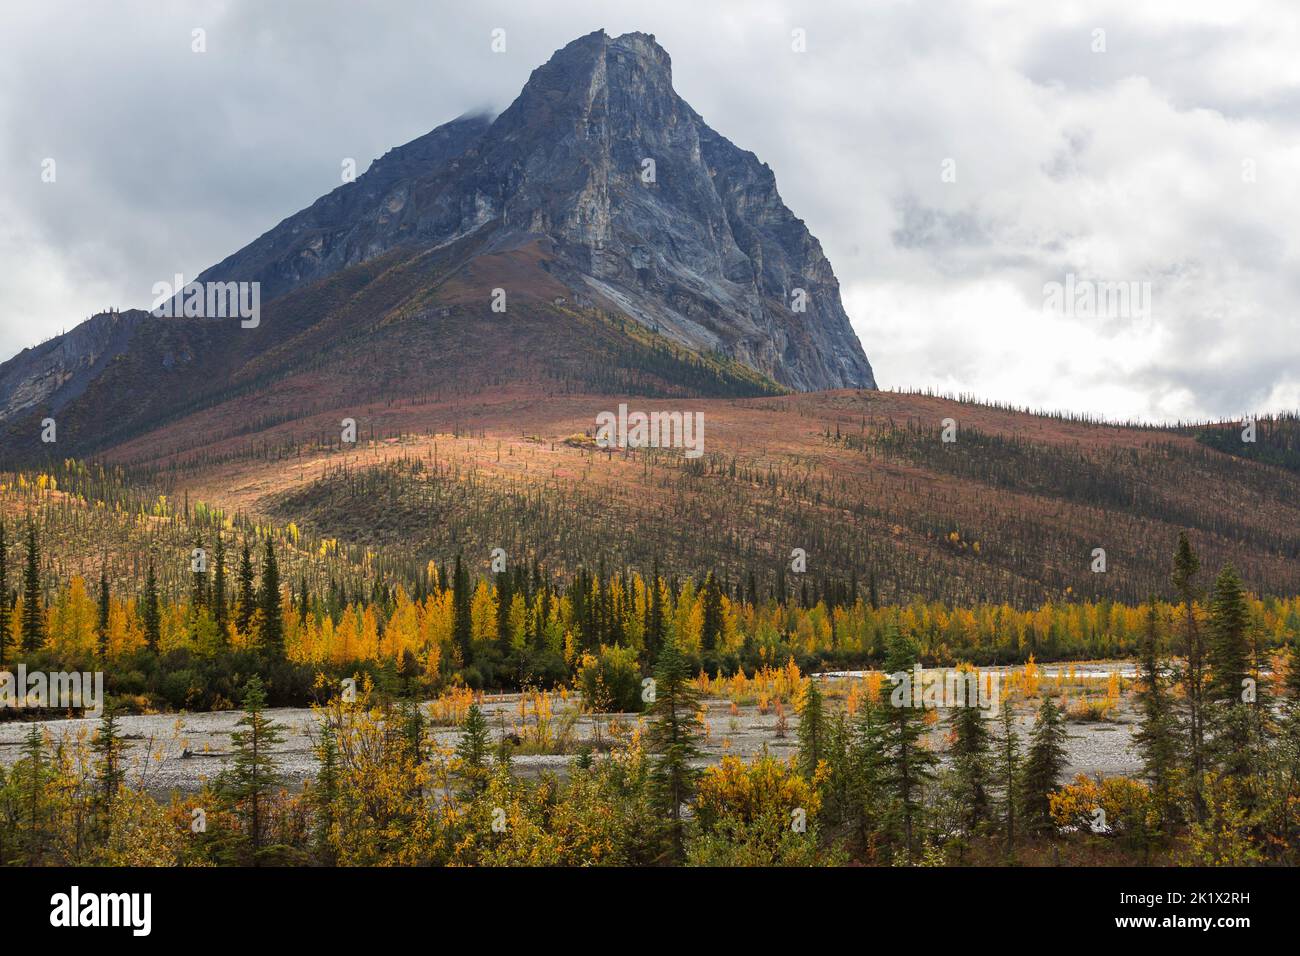 Colorful Autumn season in mountains Stock Photo